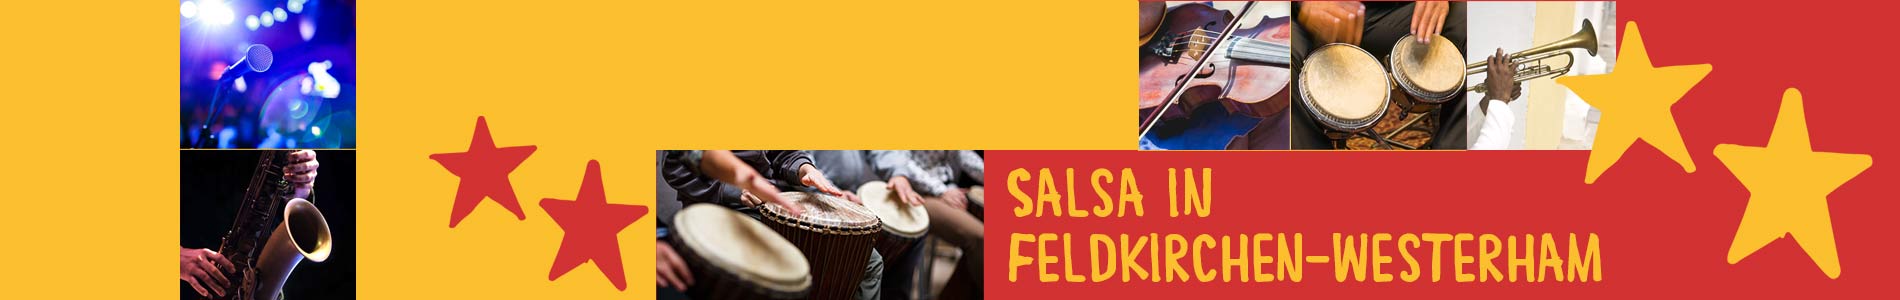 Salsa in Feldkirchen-Westerham – Salsa lernen und tanzen, Tanzkurse, Partys, Veranstaltungen